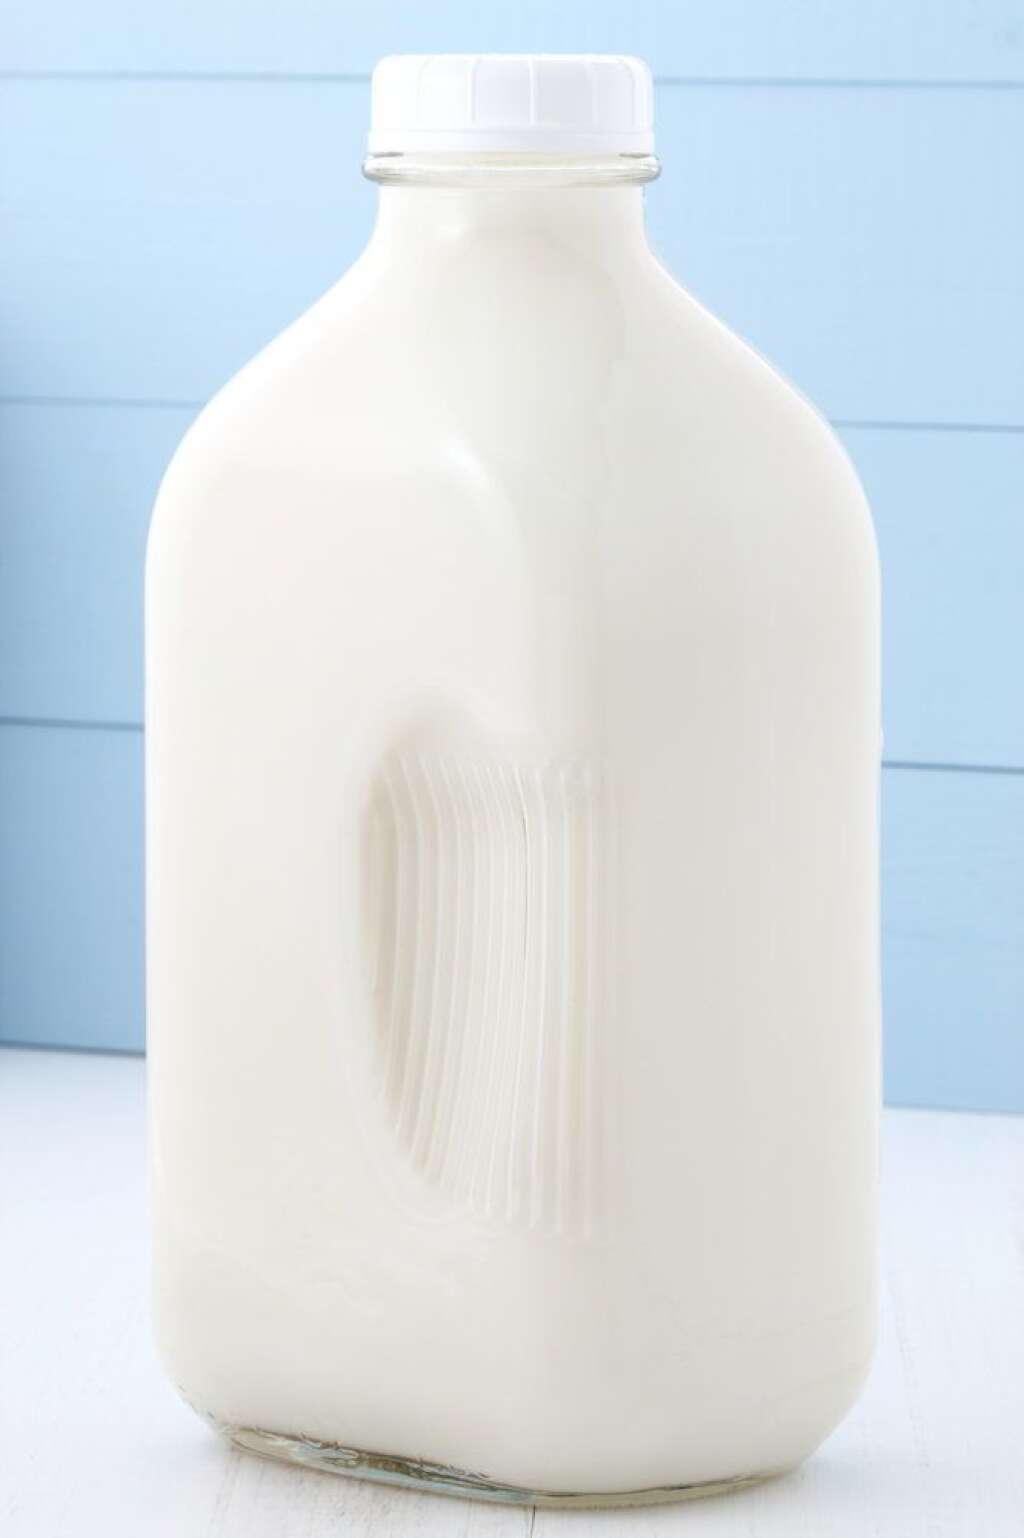 Lait - <strong>MYTHE:</strong> Le lait fait engraisser.   <strong>VÉRITÉ:</strong> Vrai et faux. Le lait 2 % ou plus est riche en gras saturés alors il faut en consommer modérément, mais vous pouvez choisir du lait écrémé ou du lait 1 % qui sont moins riches en gras.